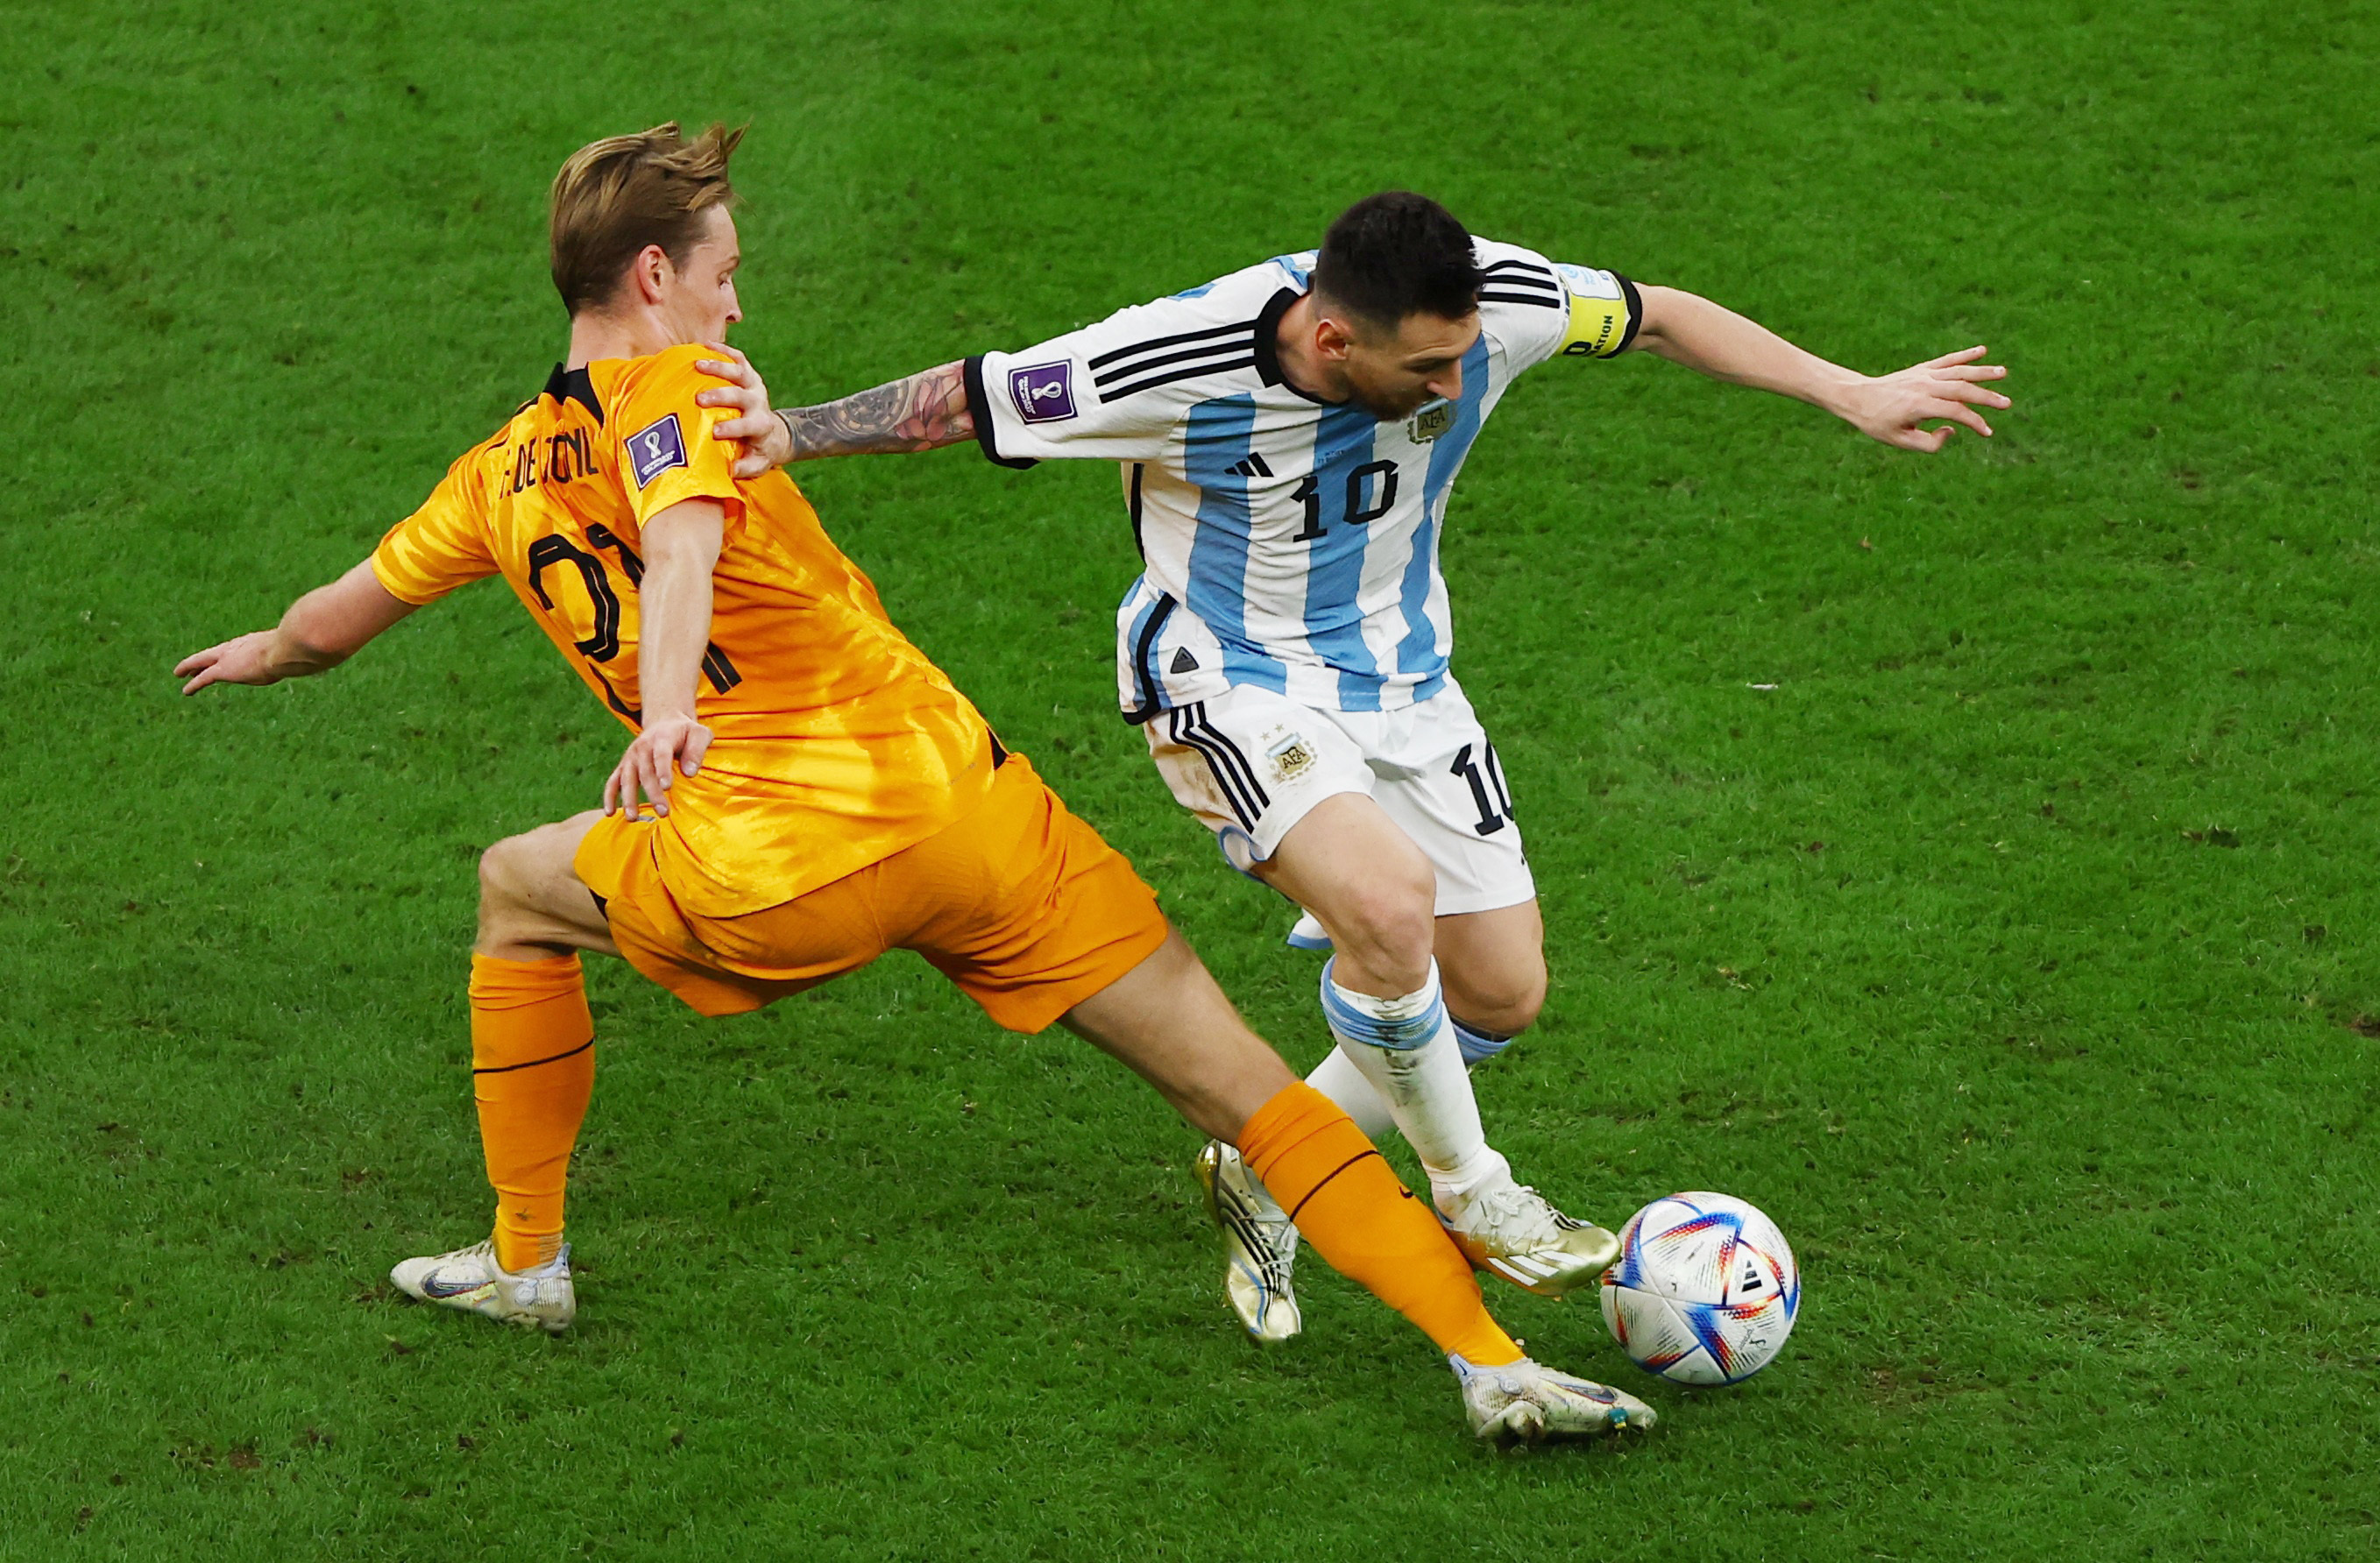 La insólita queja de un jugador de Países Bajos que fue compañero de Messi: “El árbitro sólo pitó a favor de Argentina”